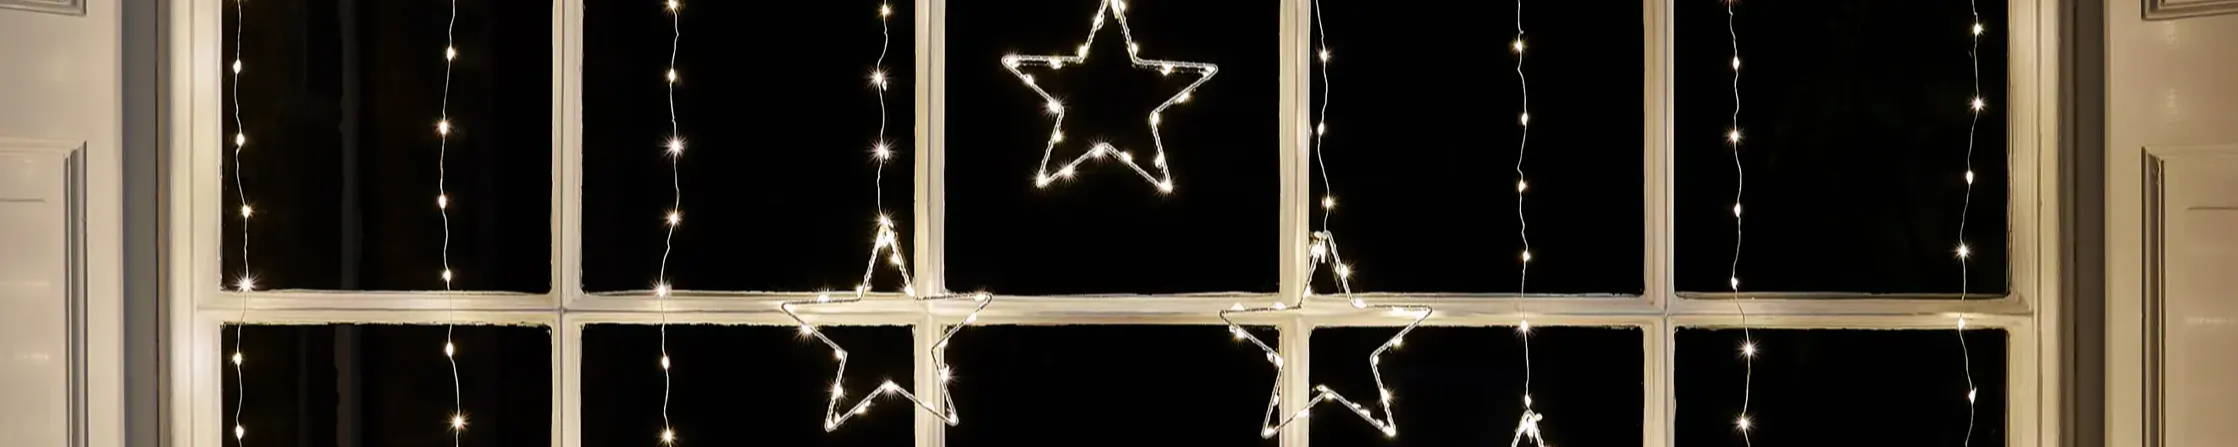 Osby star curtain light illuminated in window